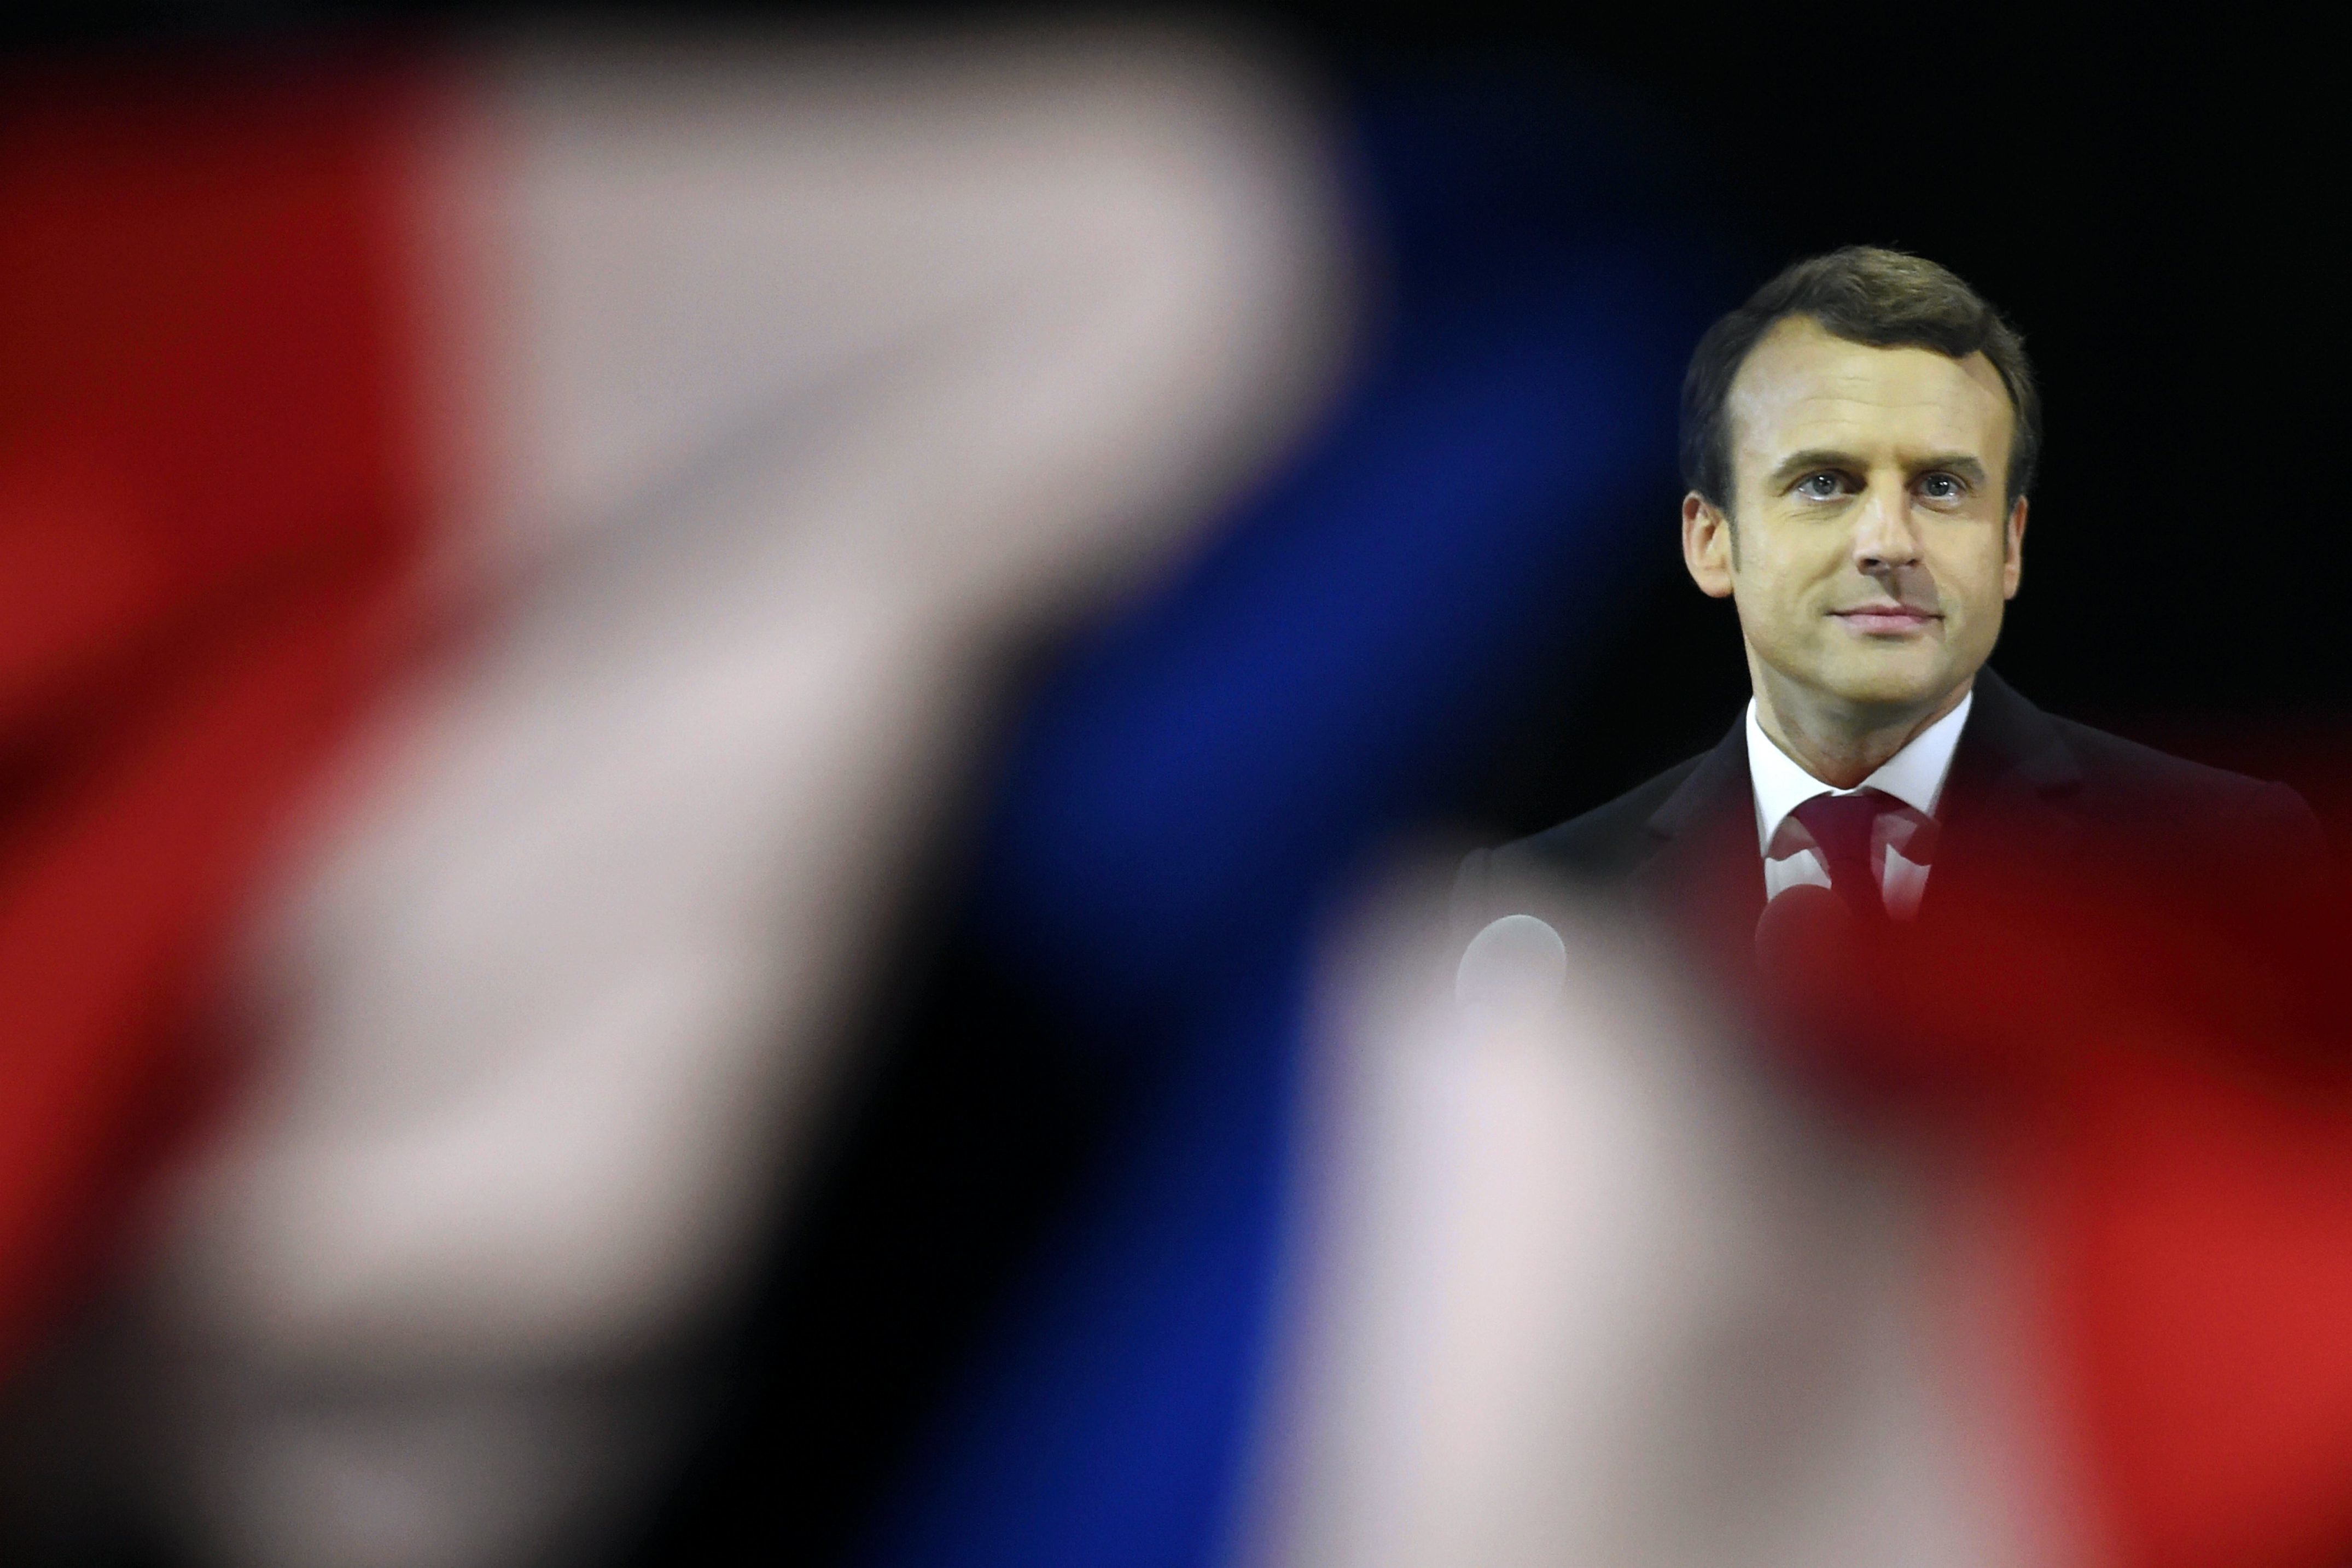 Emmanuel Macron und seine Partei La République en Marche rütteln Frankreich durcheinander. Was die Parlamentswahl für das Land und Europa bringt, bleibt abzuwarten.